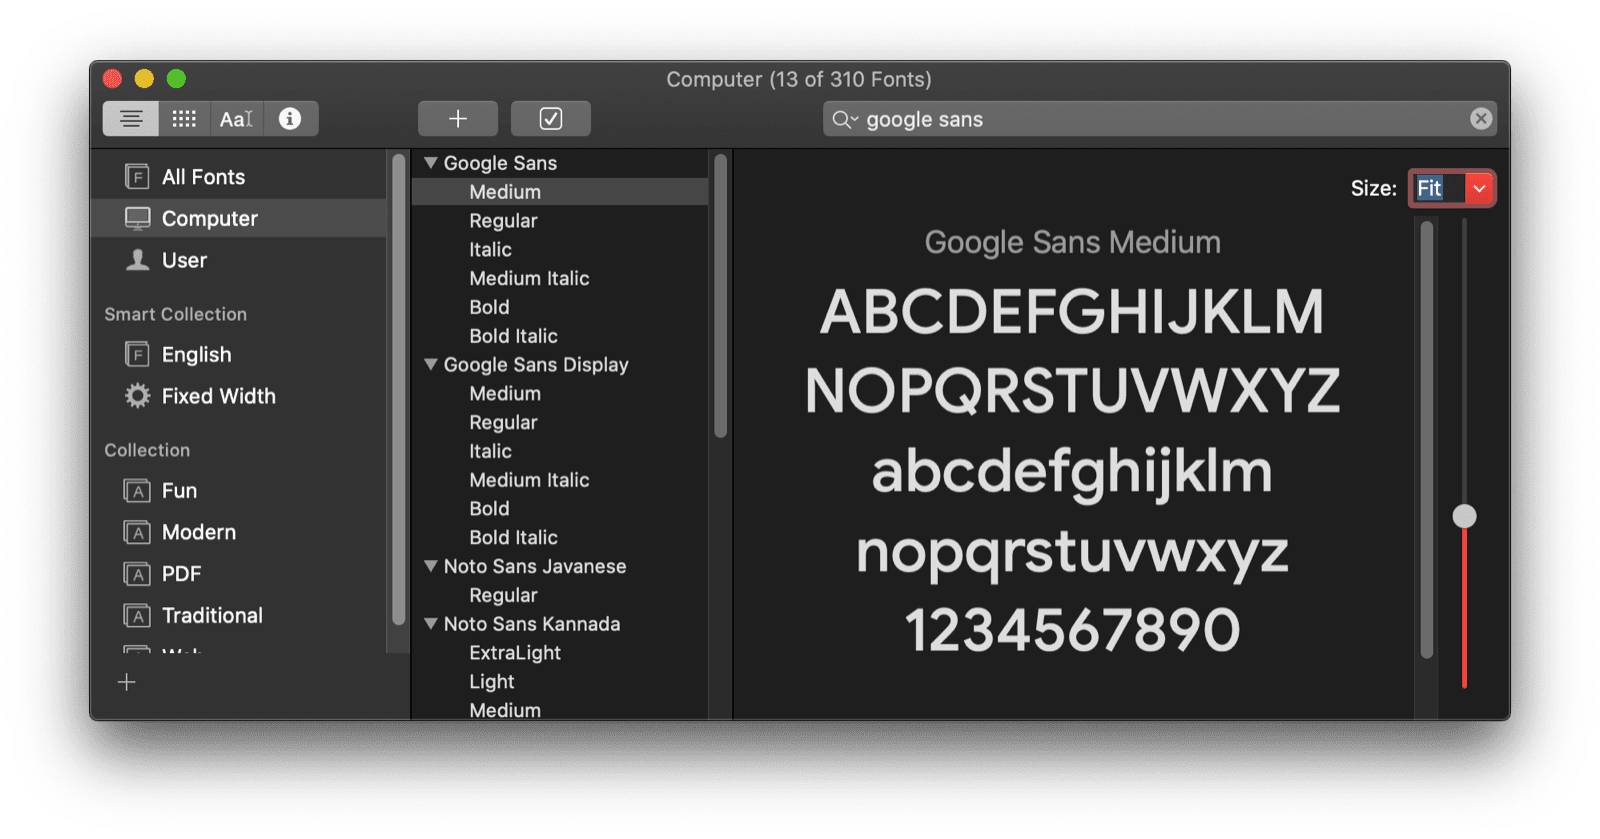 De macOS Font Book-app toont een voorbeeld van het Google Sans-lettertype.